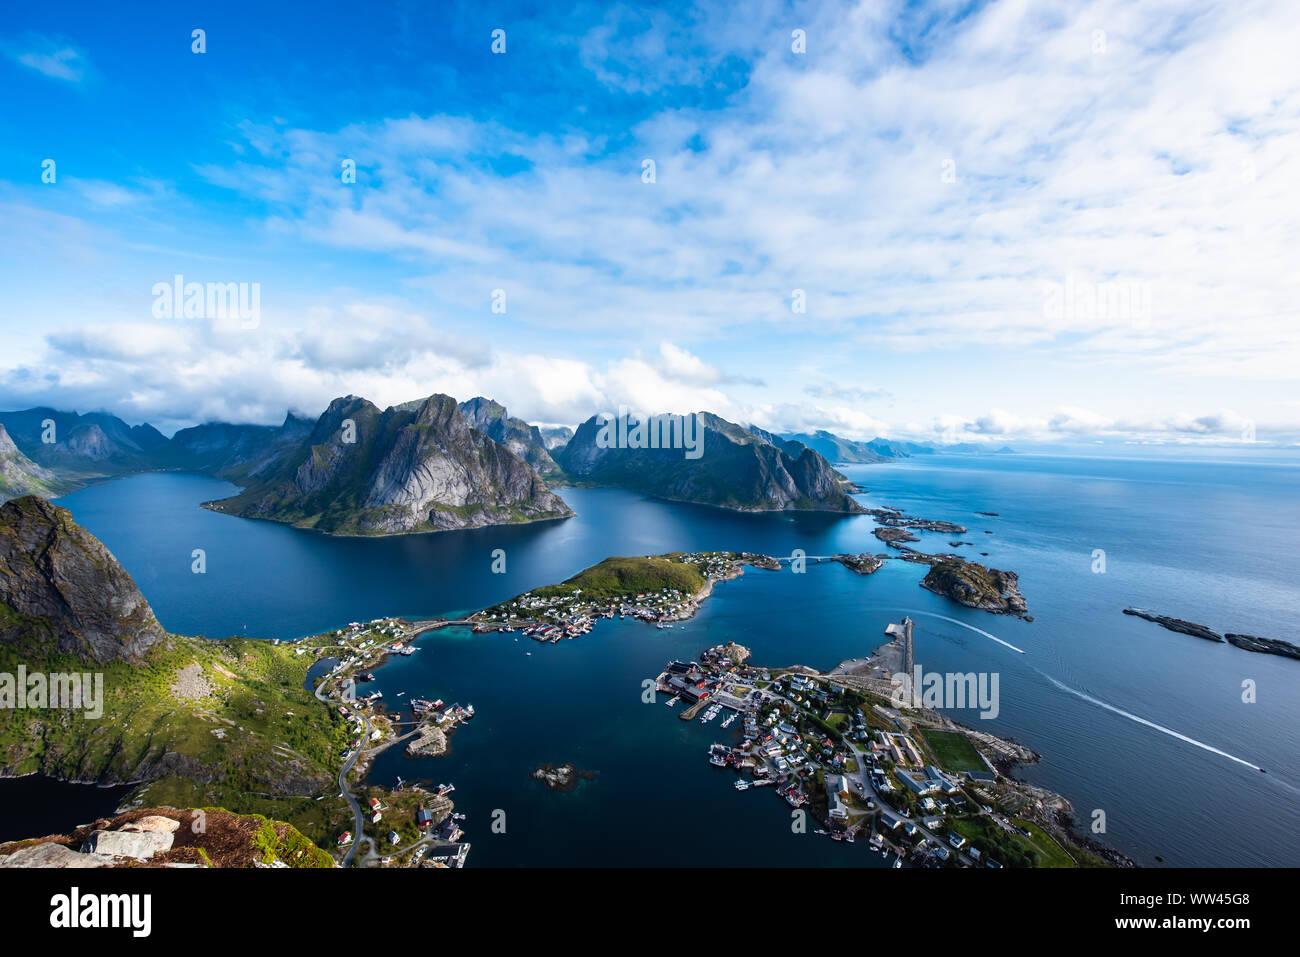 Reine from Reinebringen,view on stunning mountains of Lofoten islands, Norway Stock Photo